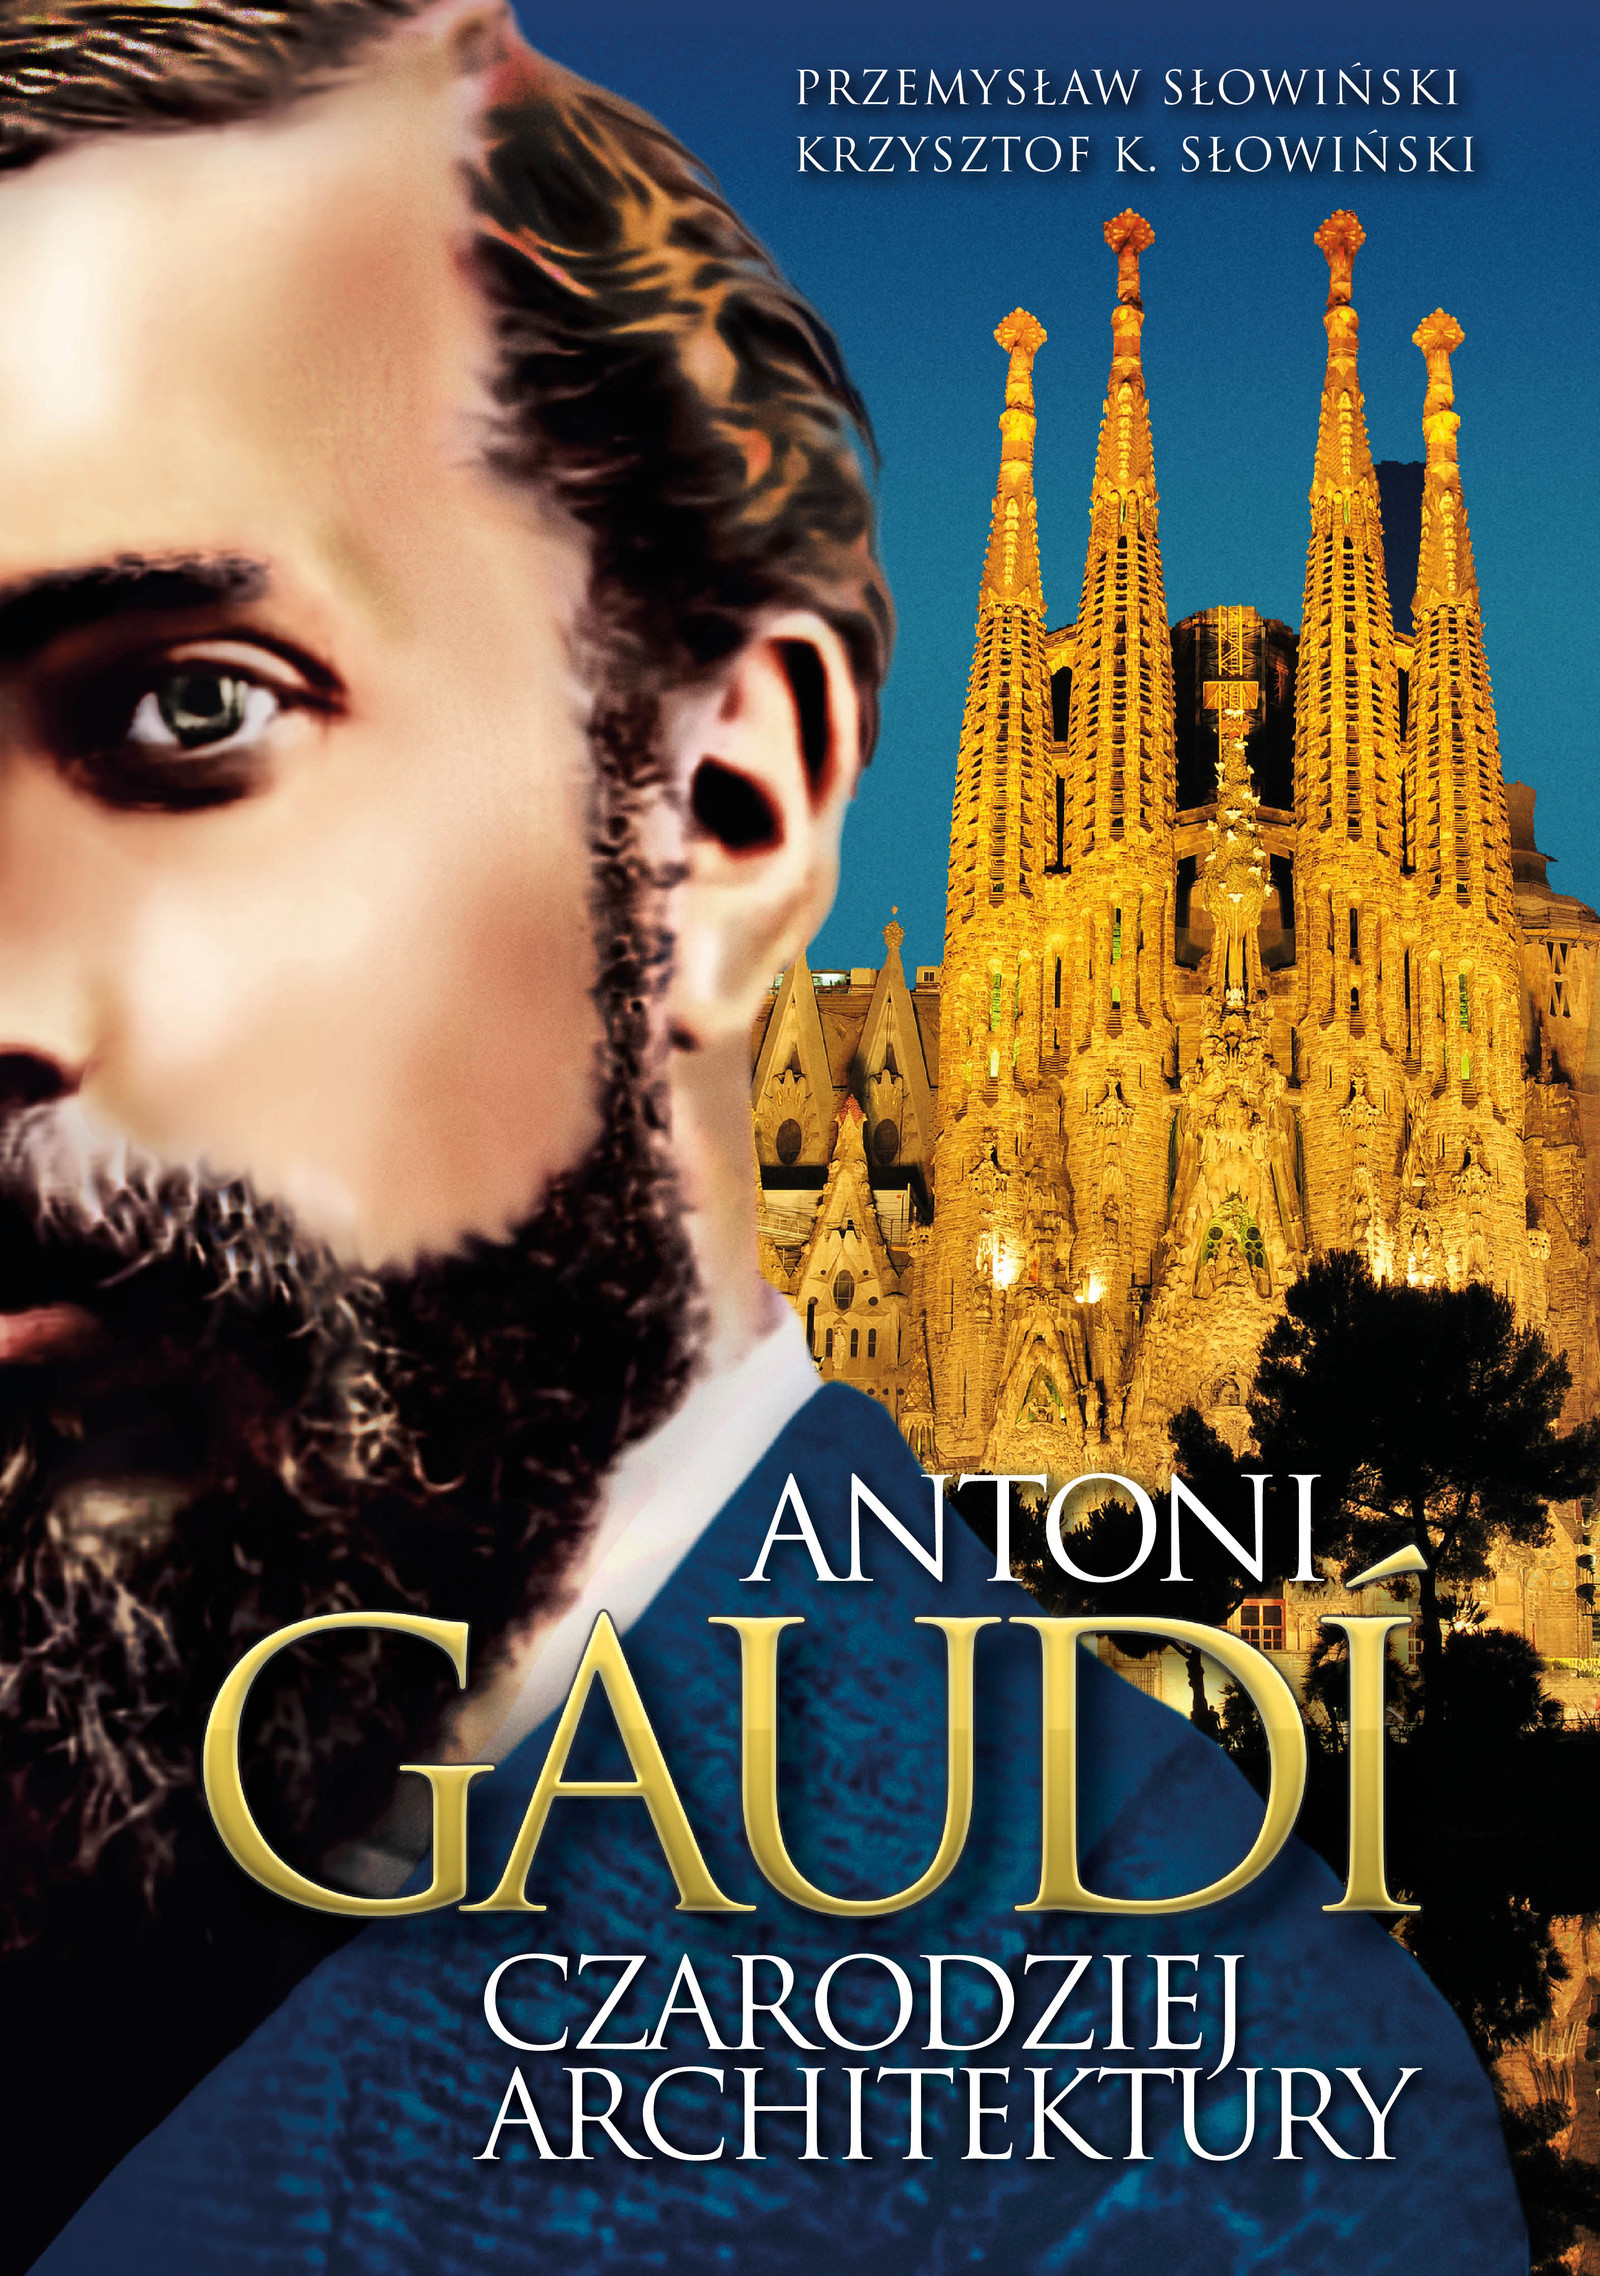 Okładka:Antoni Gaudi. Czarodziej architektury 